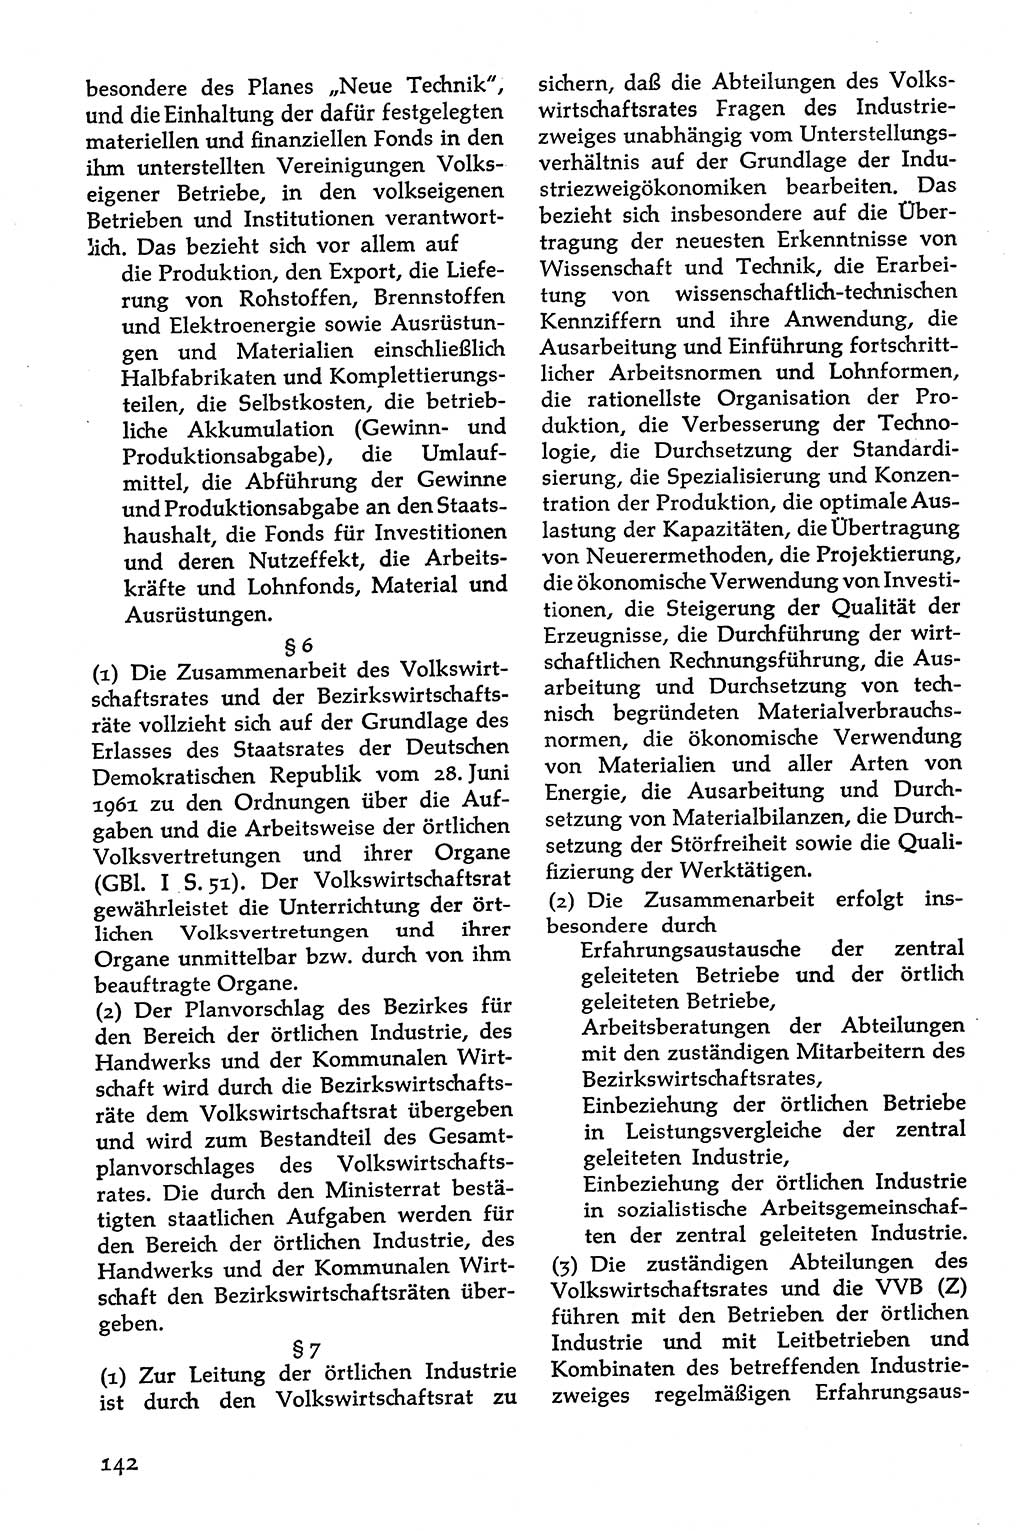 Volksdemokratische Ordnung in Mitteldeutschland [Deutsche Demokratische Republik (DDR)], Texte zur verfassungsrechtlichen Situation 1963, Seite 142 (Volksdem. Ordn. Md. DDR 1963, S. 142)